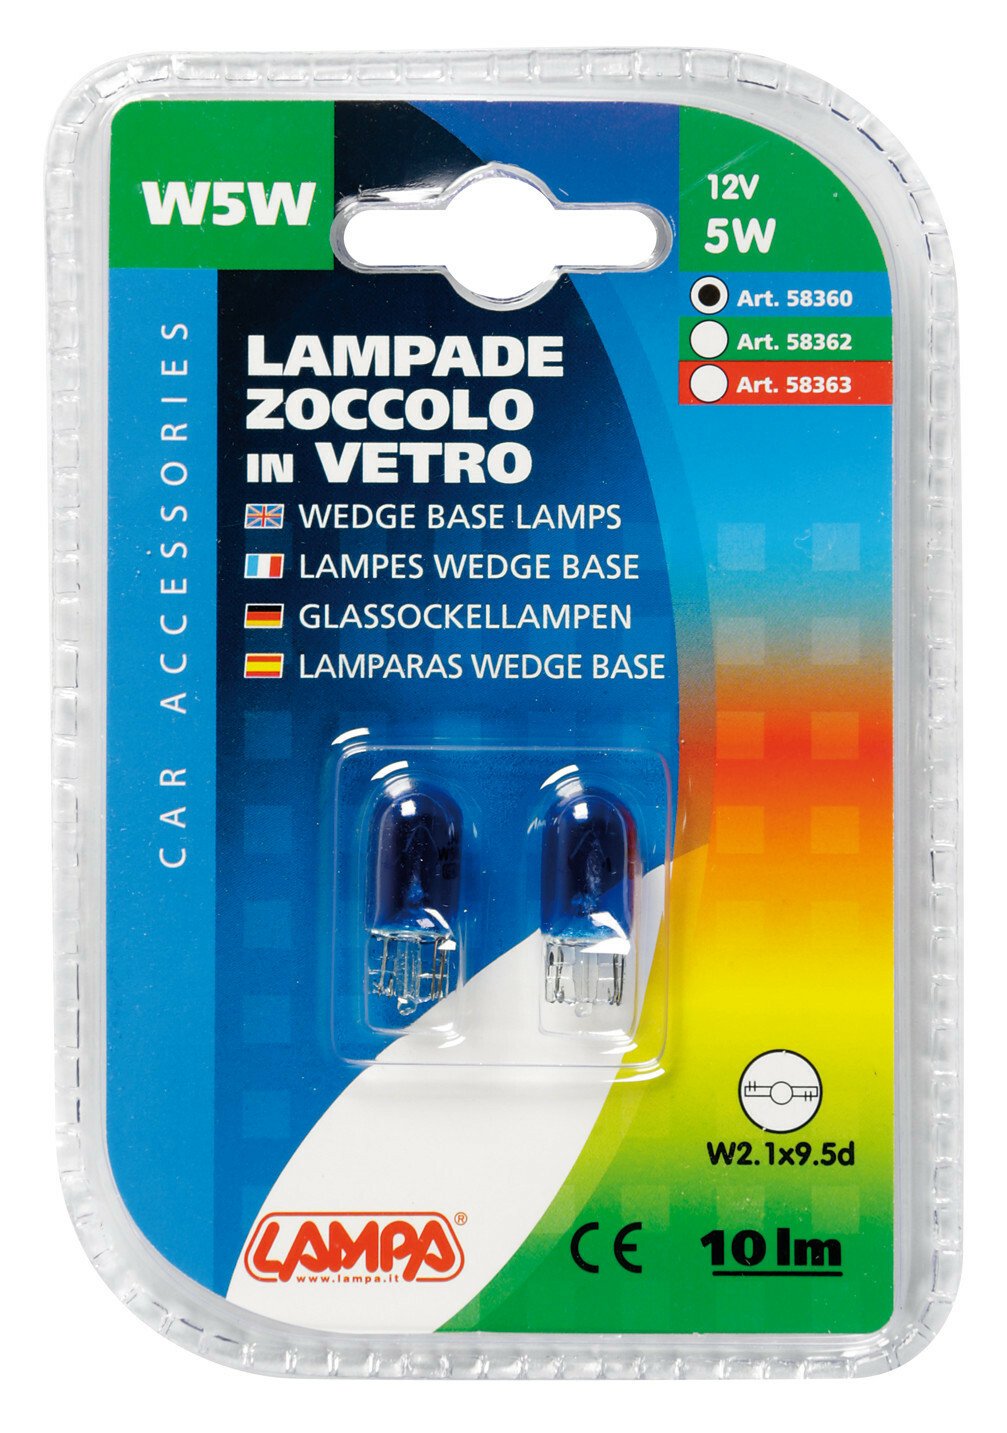 12V Wedge base lamp - (W5W) - 5W - W2,1x9,5d - 2 pcs - D/Blister - Blue thumb